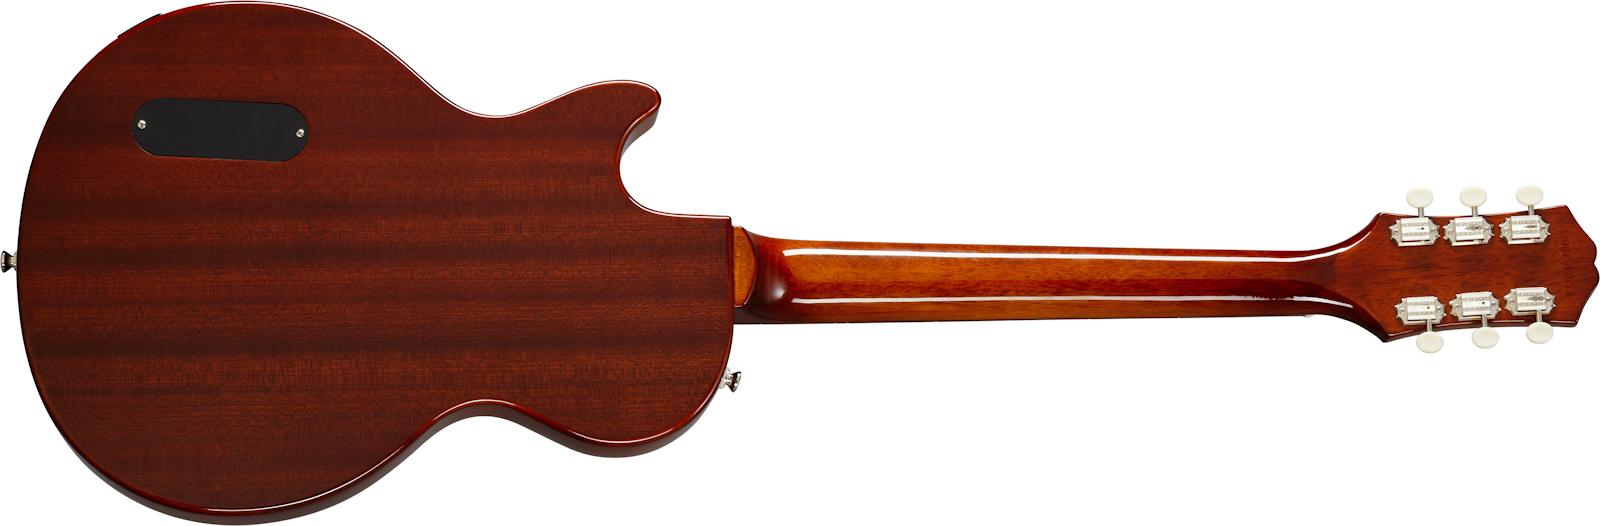 Epiphone Les Paul Junior P90 Ht Rw - Vintage Sunburst - Guitarra eléctrica de corte único. - Variation 1